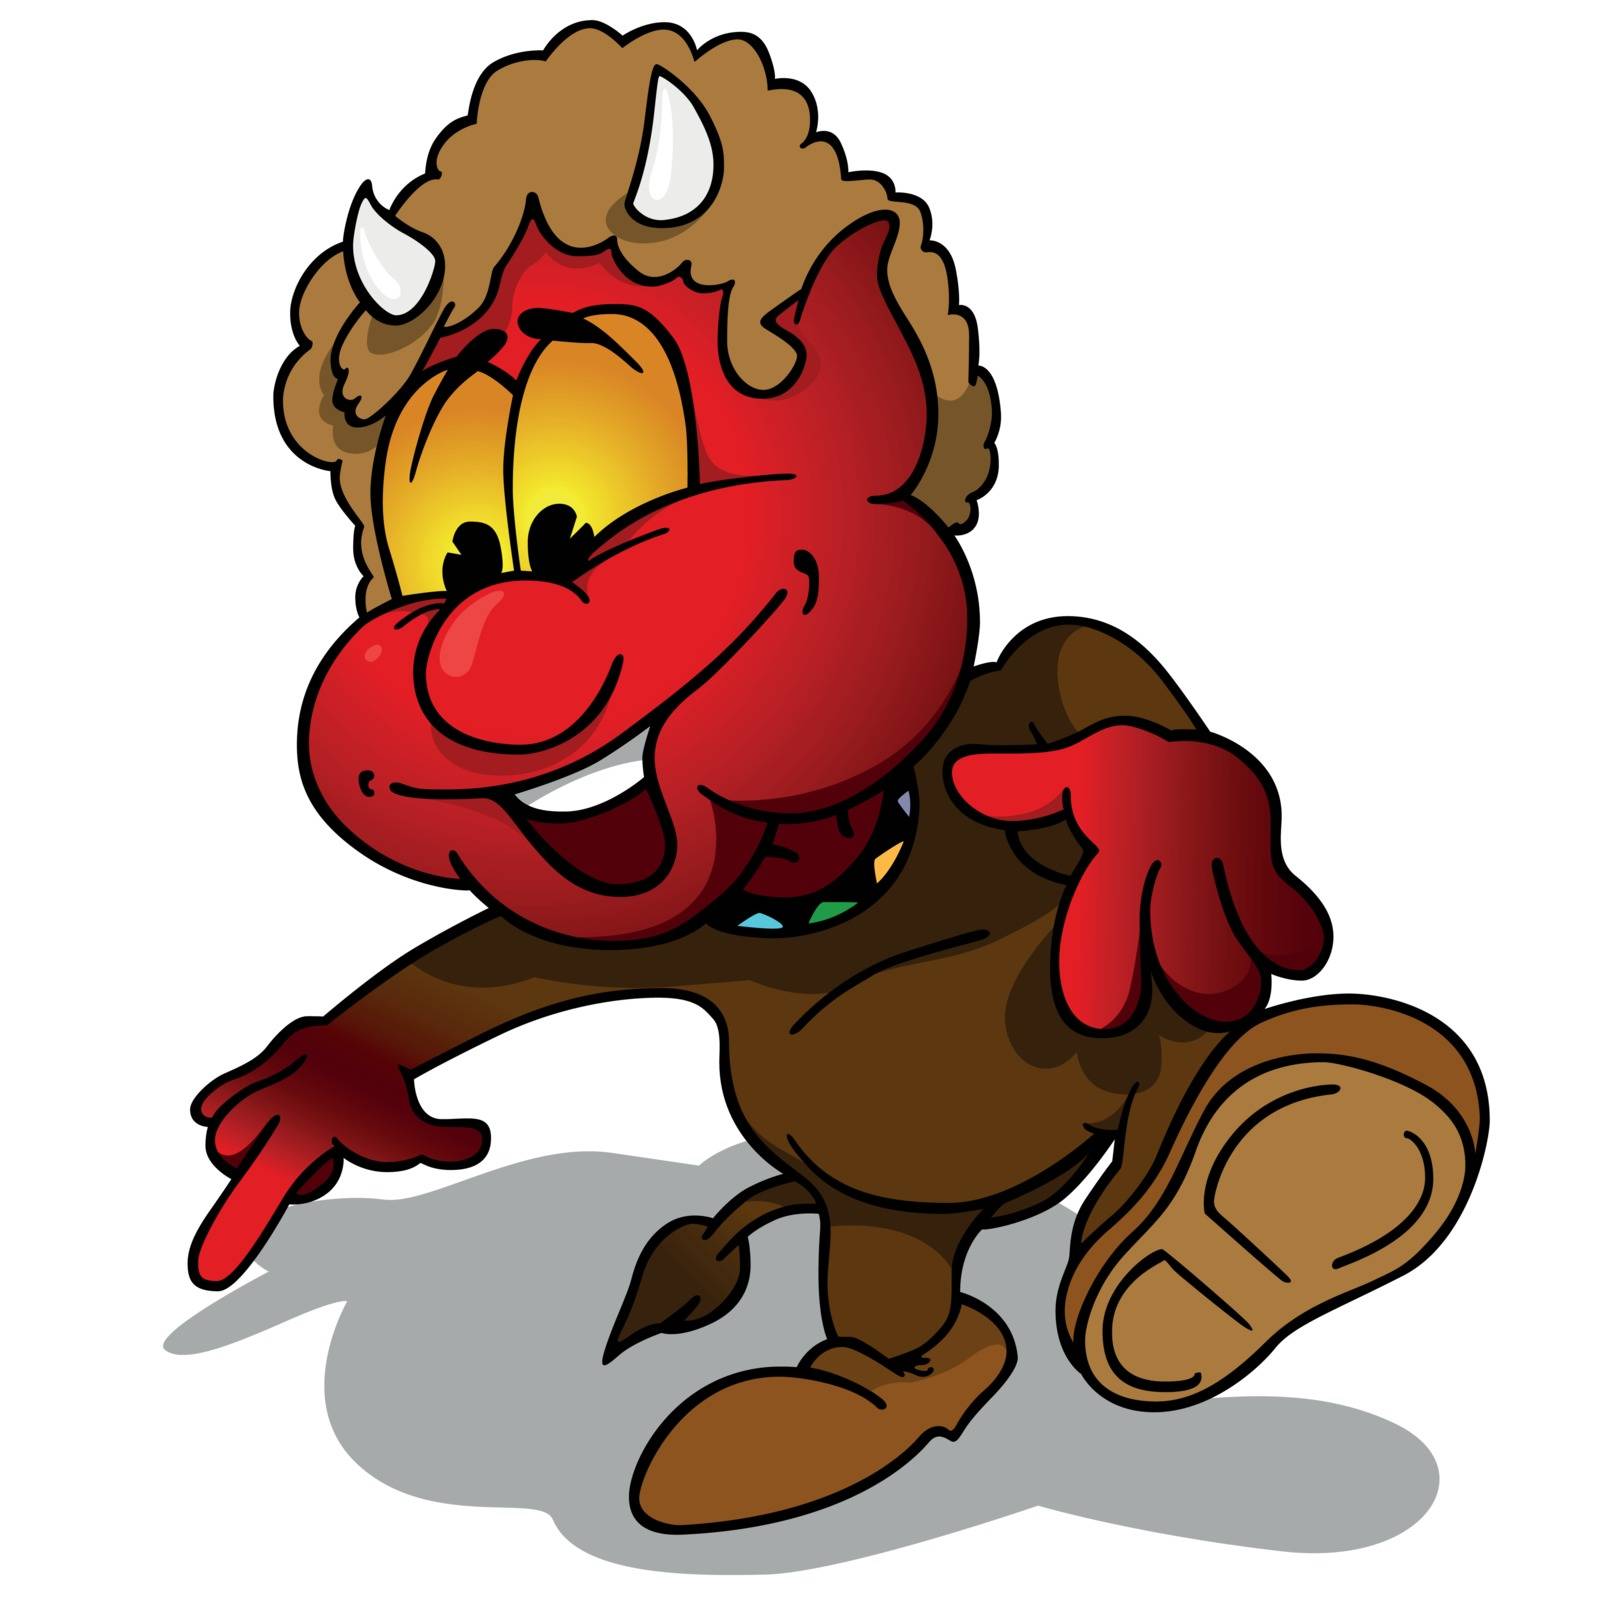 Devil - Cartoon Character Illustration, Vector